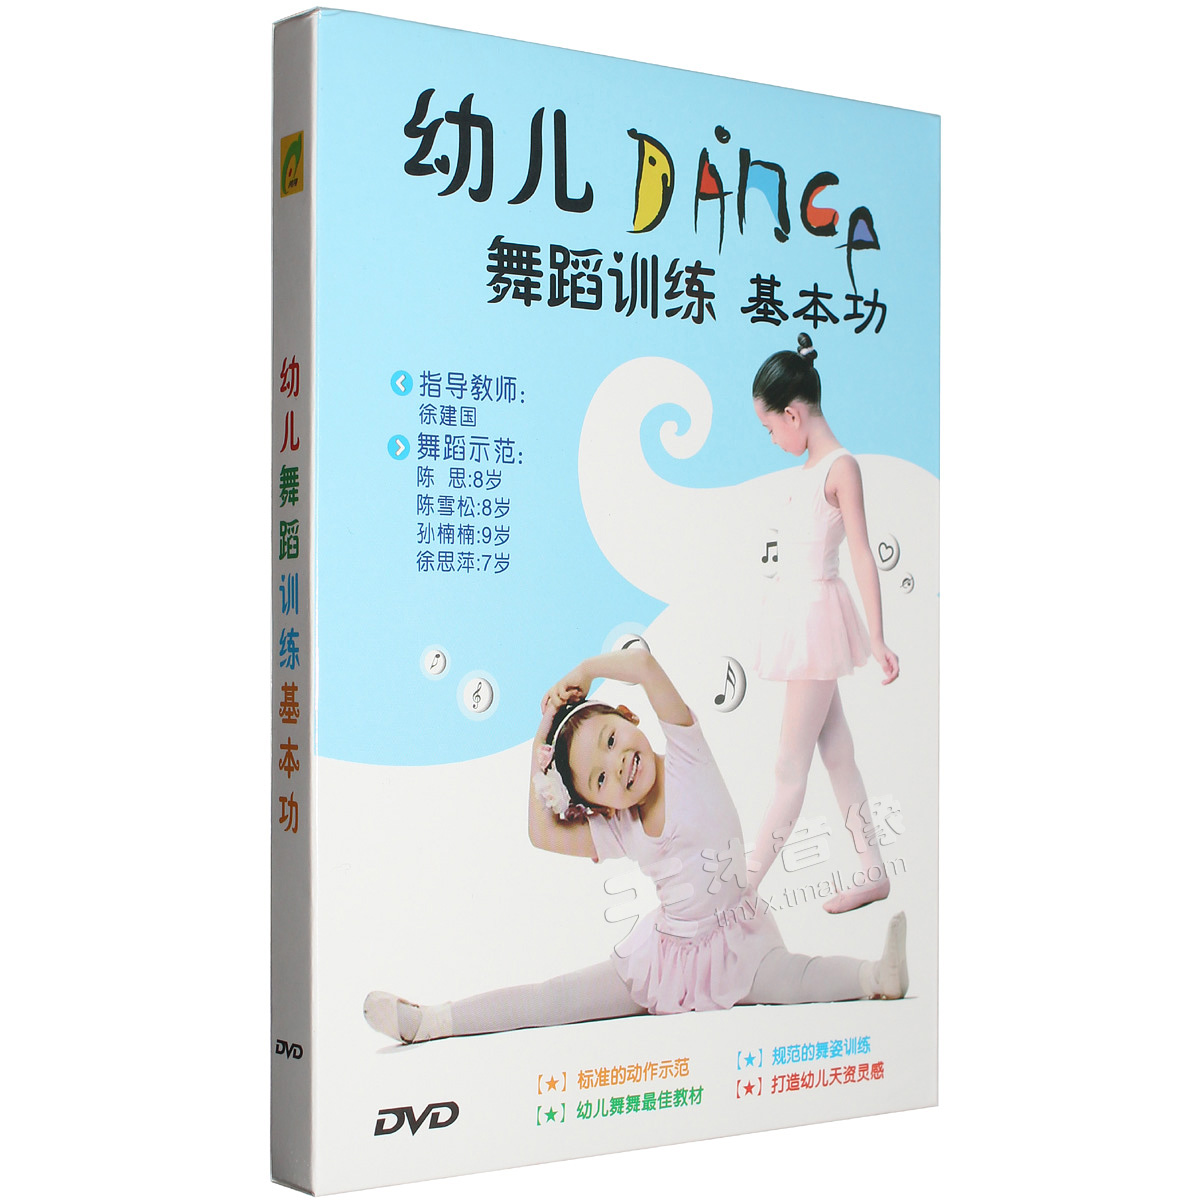 

Развивающее видео для детей DVD